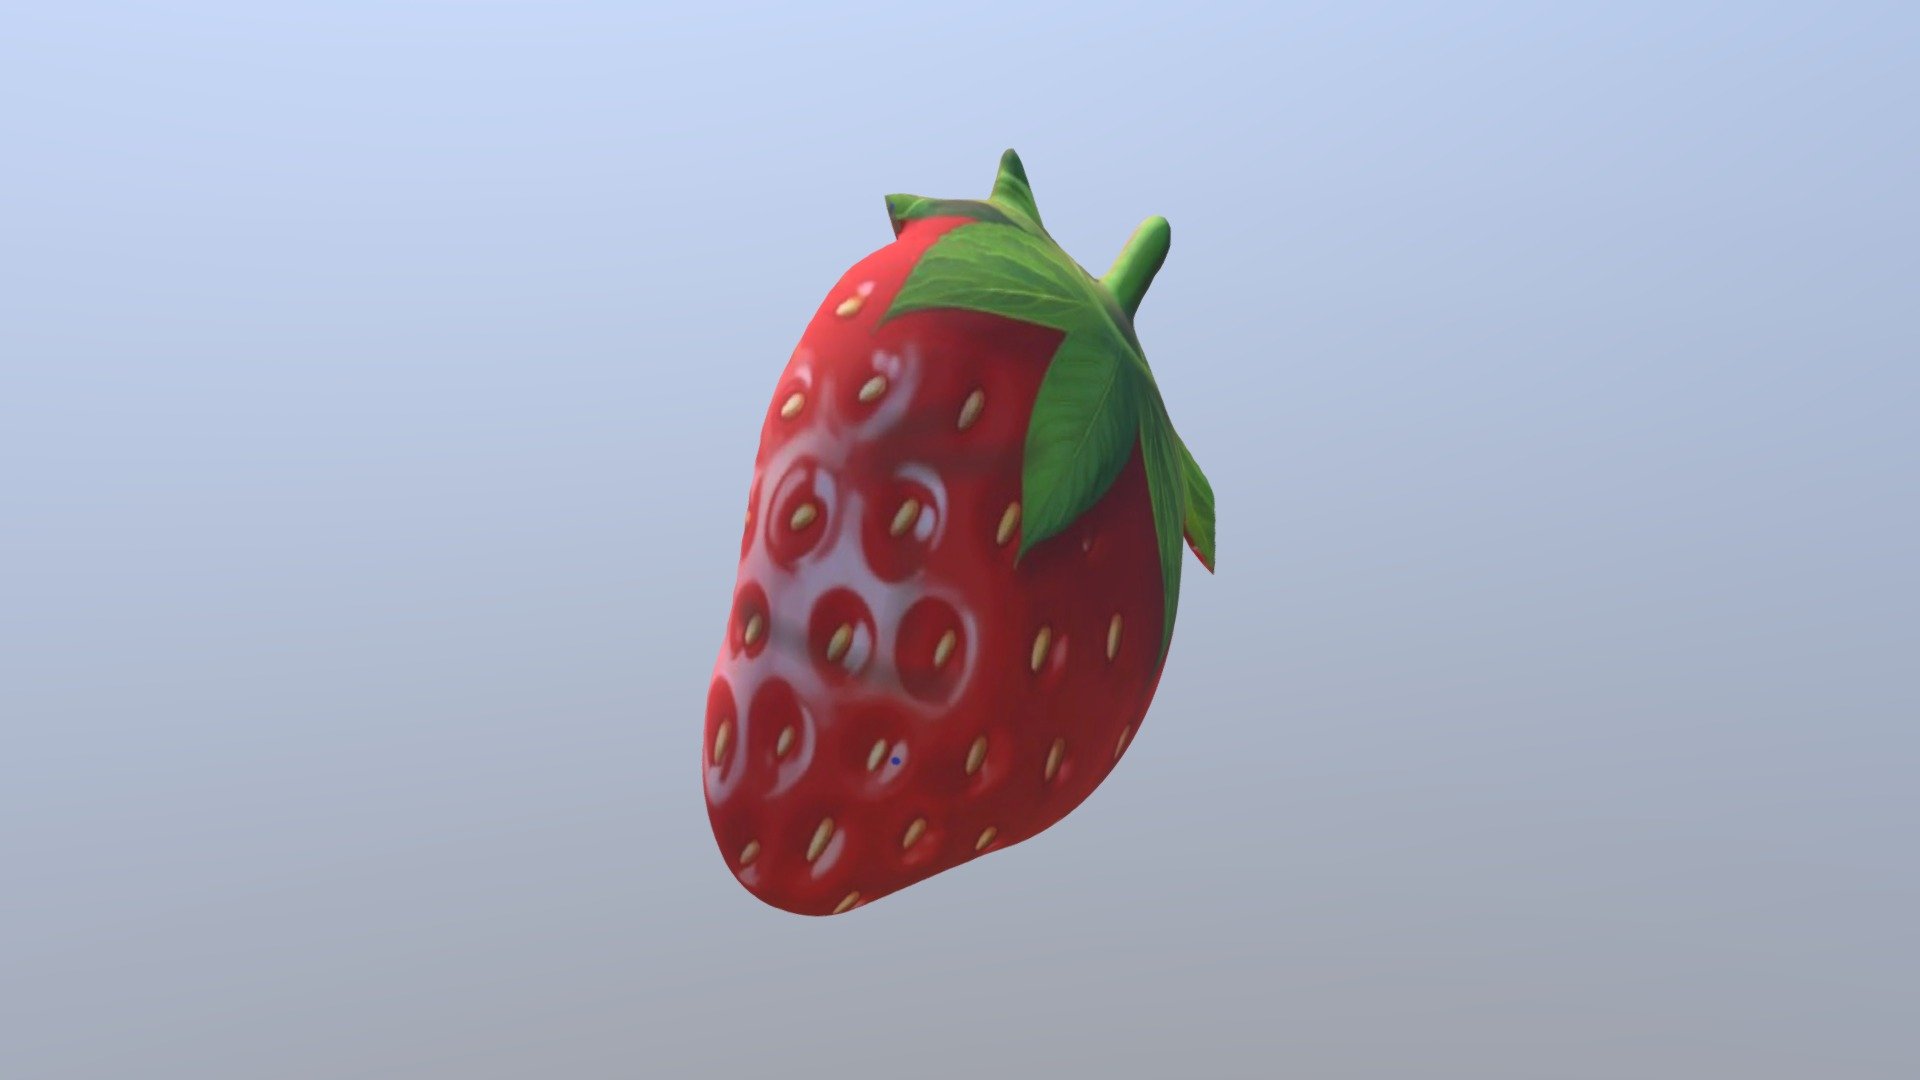 Strawberry - 3D model by suwarti [571af4a] - Sketchfab